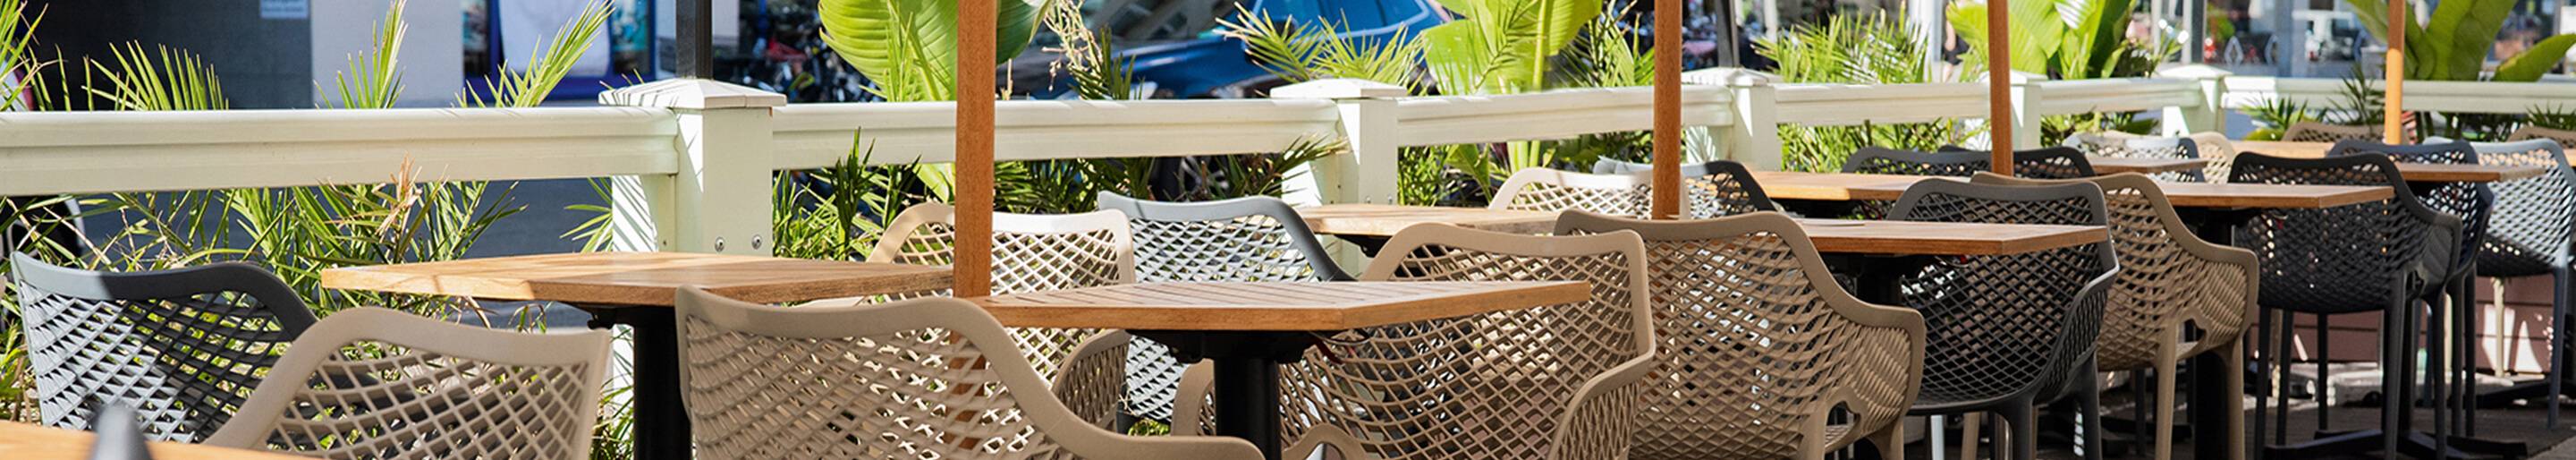 Chaises en plastique pour votre restaurant ou hôtel